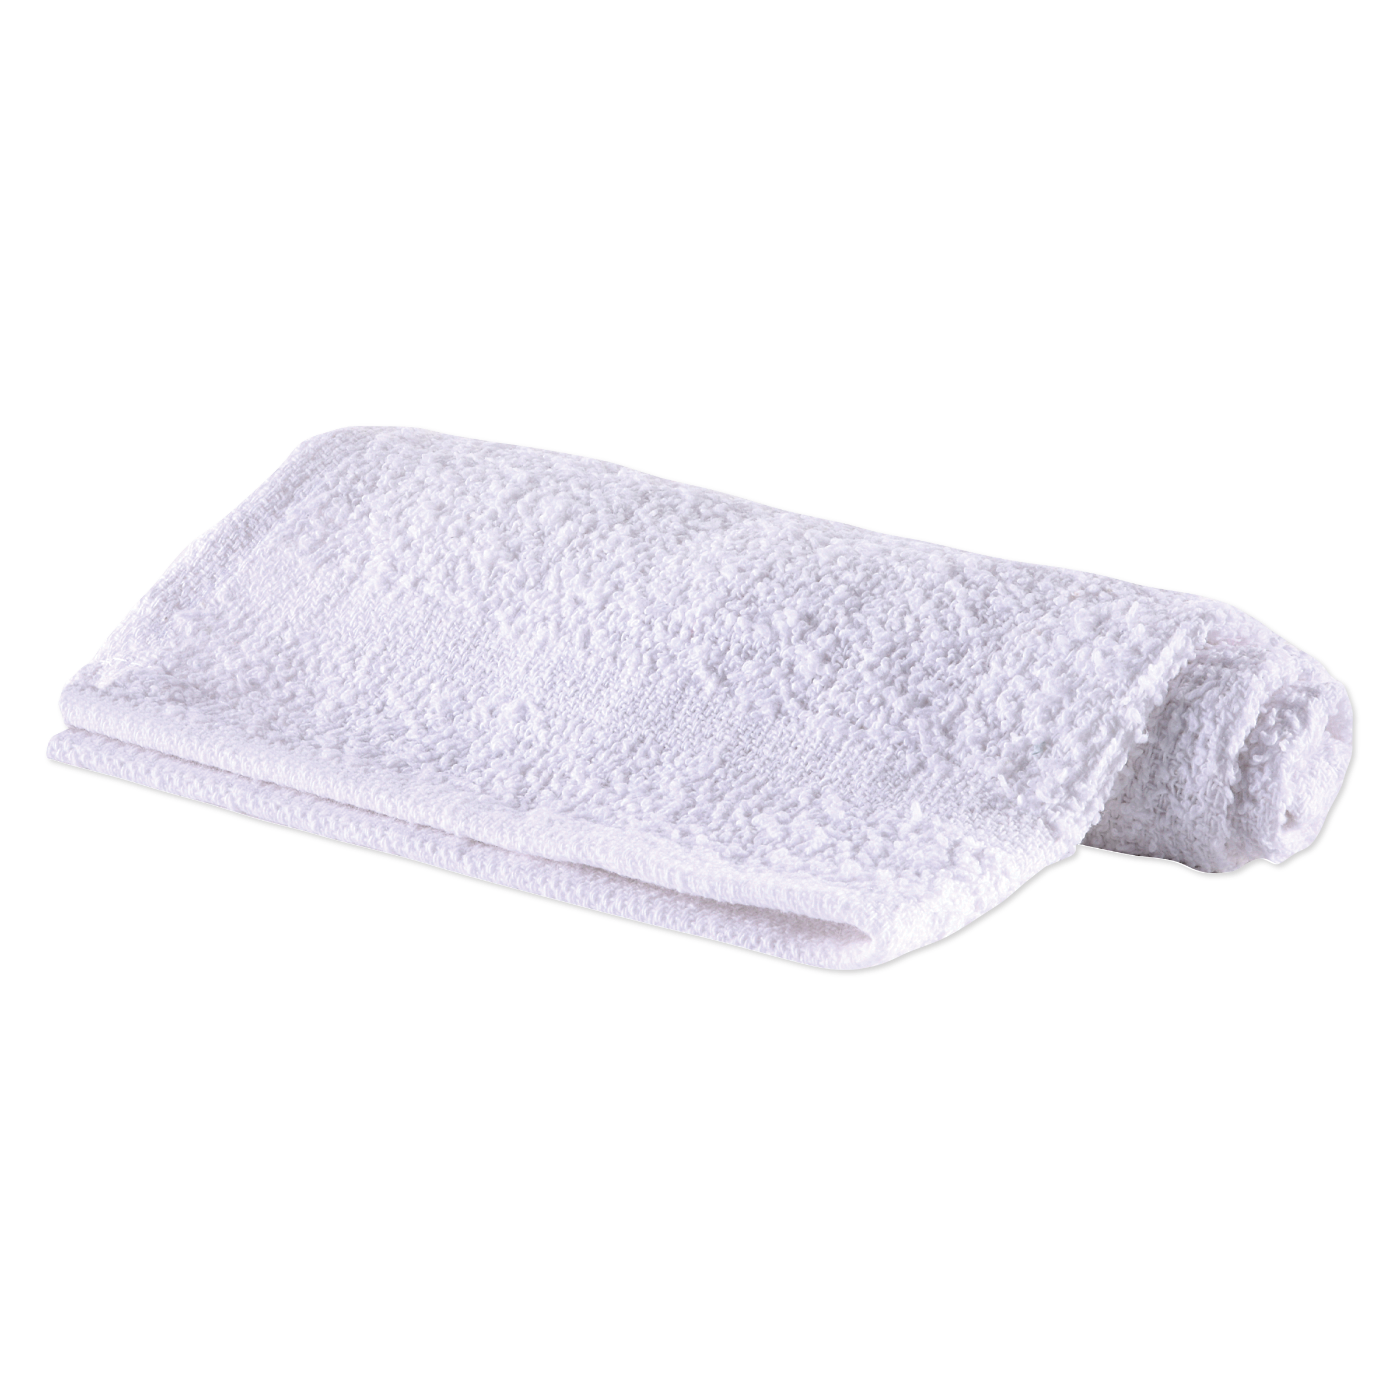 Cotton Washcloth, 12" x 12", Economy - White